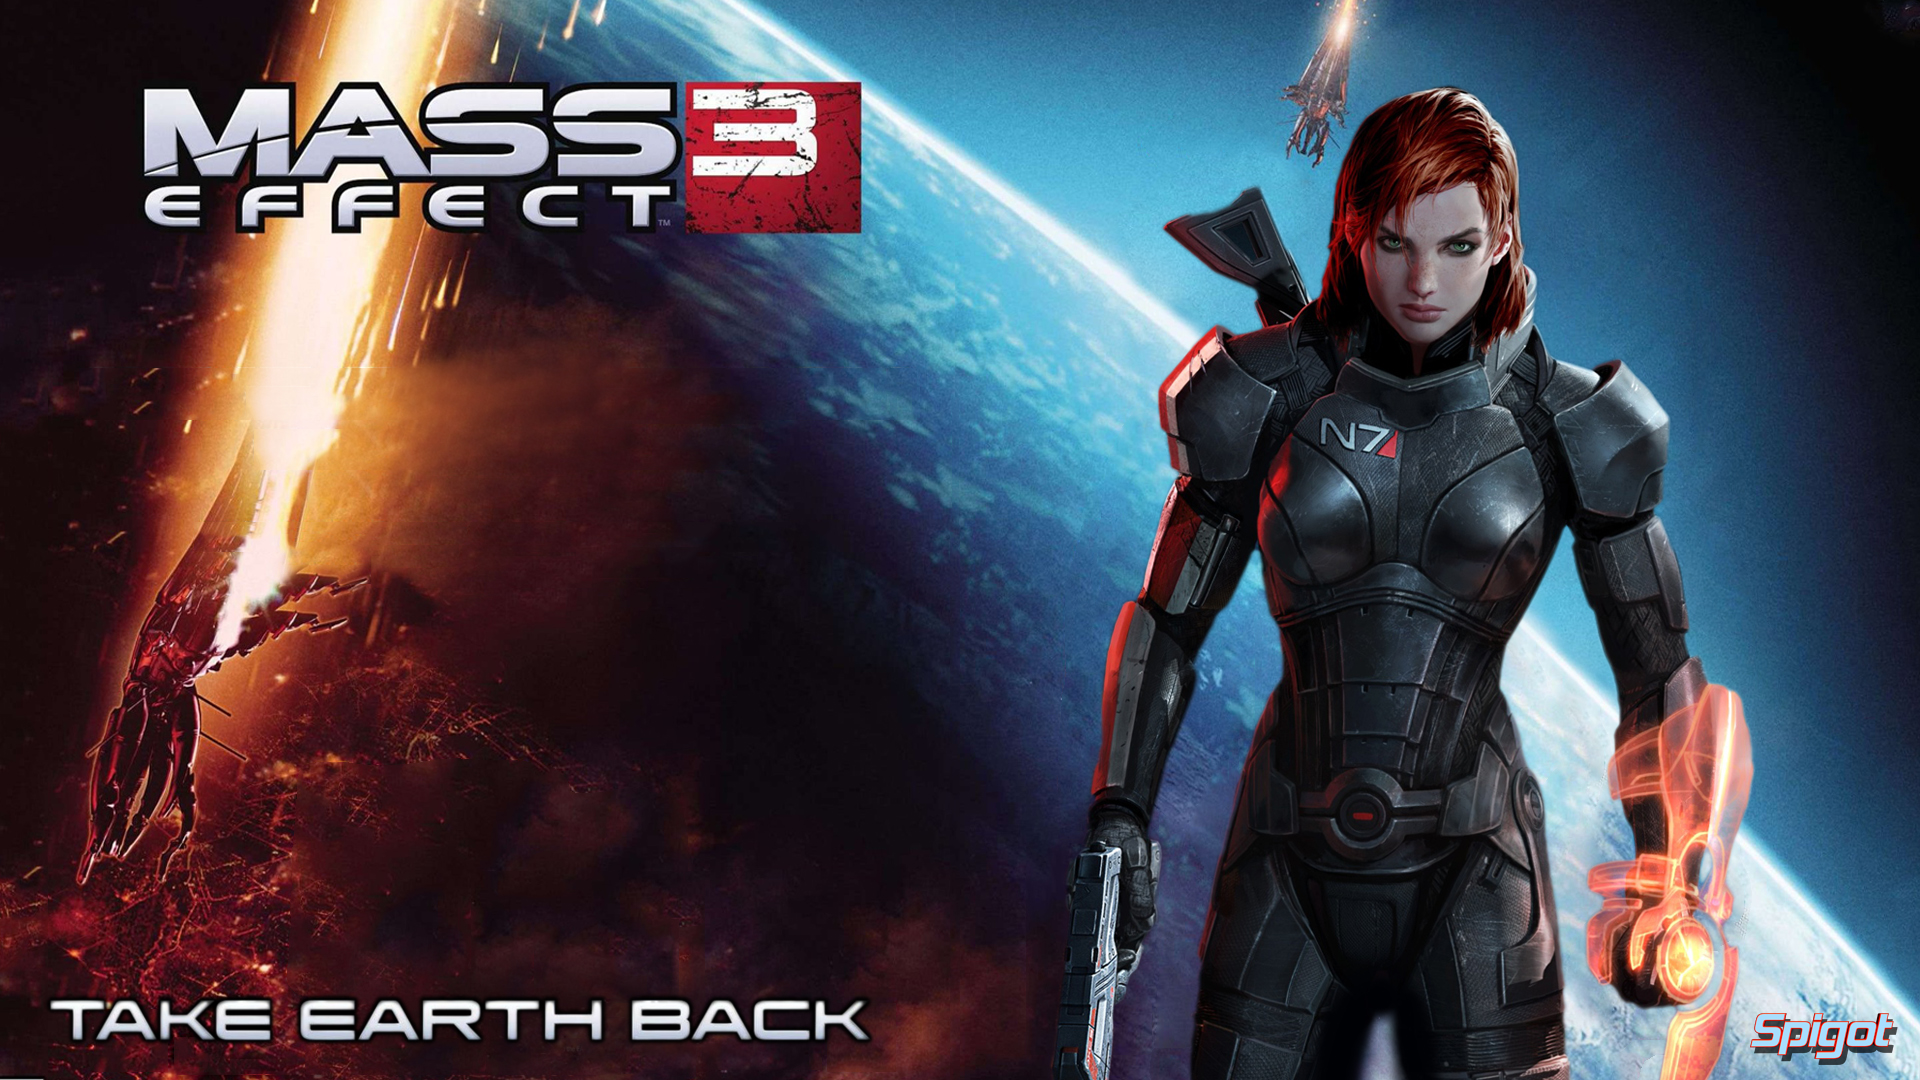 Mass Effect 3 Wallpapers George Spigots Blog